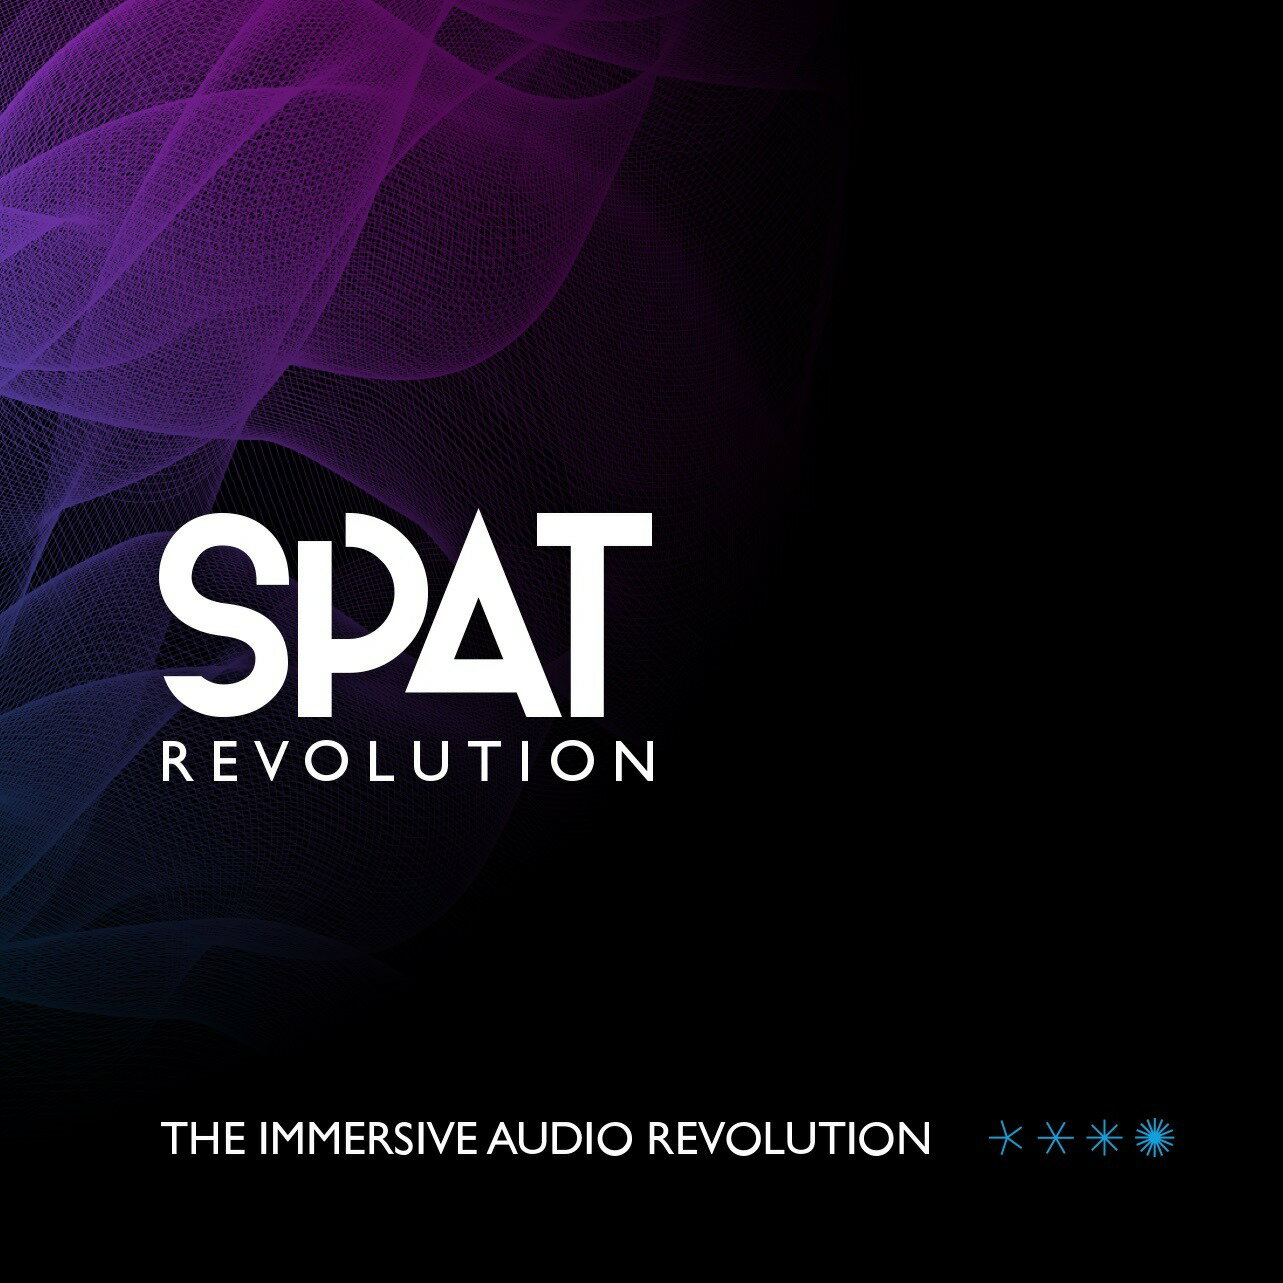 SPAT REVOLUTION - イマーシブ・オーディオの革命。 SPAT Revolutionは、IRCAMの音響と空間認識の研究成果と、Flux::のプロフェッショナル向けオーディオ製品開発における長年の経験をベースに開発された、最も多機能で先進的なリアルタイムで動作するイマーシブ3Dオーディオ編集アプリケーションです。複数の立体空間を擬似的にソフトウェア内にセットアップ、アコースティック・シミュレーションを行った上で、サラウンドから7.2.1ch、22.2chまで、様々な立体音響のスピーカー配置用にオーディオ信号を出力します。入力と出力チャンネル数、入出力トランスコーダーの使用数に上限はありません。 無制限の入出力チャンネル数 SPAT Revolutionはスタンド・アローンのアプリケーションで、ハードウェアのI/OはASIO (Windows)とCore Audio (Mac OS X)をサポート、入出力数に制限はなく、Open Sound Control (OSC)を使ってDAWソフトウェアと統合的に使用することが可能です。 入力ストリームのフォーマットと出力スピーカーのアレンジメント SPAT Revolutionは、チャンネルベース、7次までのアンビソニック、バイノーラル、トランスオーラル、MS、A-フォーマット、Bフォーマット、UHJ、Eigenmikeなど、様々なフォーマットのオーディオをそのまま入力ソースとして扱うことが可能です。プロセス後の出力は、ステレオ、5.1、Cube、Auro 3D、DTS、Atmos、22.2chを含む、様々なスピーカーの配置形式で出力可能です。 入力と出力のトランスコーダー チャンネルベースのスプリッター／アグリゲーター、HOAからHOA、HOAからチャンネルベース、A-FormatからB-Format、A/B-FormatからChannel Based、B-FormatからUHJ、UHJからB-Format、MSからチャンネルベース、バイノーラルからトランスオーラル、トランスオーラルからバイノーラル、EigenmikeからChannel Basedなど、様々な形式の入出力フォーマットを変換するトランスコーダーも装備しています。 エクステンシブ・ソース・コントロール 各入力ソースは、個別に設定可能なパラメーターのセットが用意されています。空間内での位置、指向方向、放射角度といったソースとなる音源のあらゆる特性の設定に加えて、プレゼンス、Warmth（暖かさ）、Brilliance（明瞭度）といった知覚に関わる要素も入力ソース毎に設定が可能です。 無限のクリエイティビティー 立体音響におけるクリエイティブなワークフローをさらに強化するために、SPAT Revolutionは、HRTF Sofaサポート、ソースまたはマスターバスにVSTエフェクト（オートメーション対応）をインサート可能、OSCサポート、複数の3Dビュー、タイムコード・シンクとPython（パイソン）スクリプトのサポートなど、様々な追加機能を備えてています。 互換性 SPAT RevolutionはMac OS XとWindowsでスタンドアローンのアプリケーションとして動作、ハードウェアのI/OはASIO（Windows）とCore Audio（Mac OS X）に対応、Pro Tools、Nuendoをはじめとする各種DAWとは、Open Sound Control (OSC)を使って統合的に動作します。